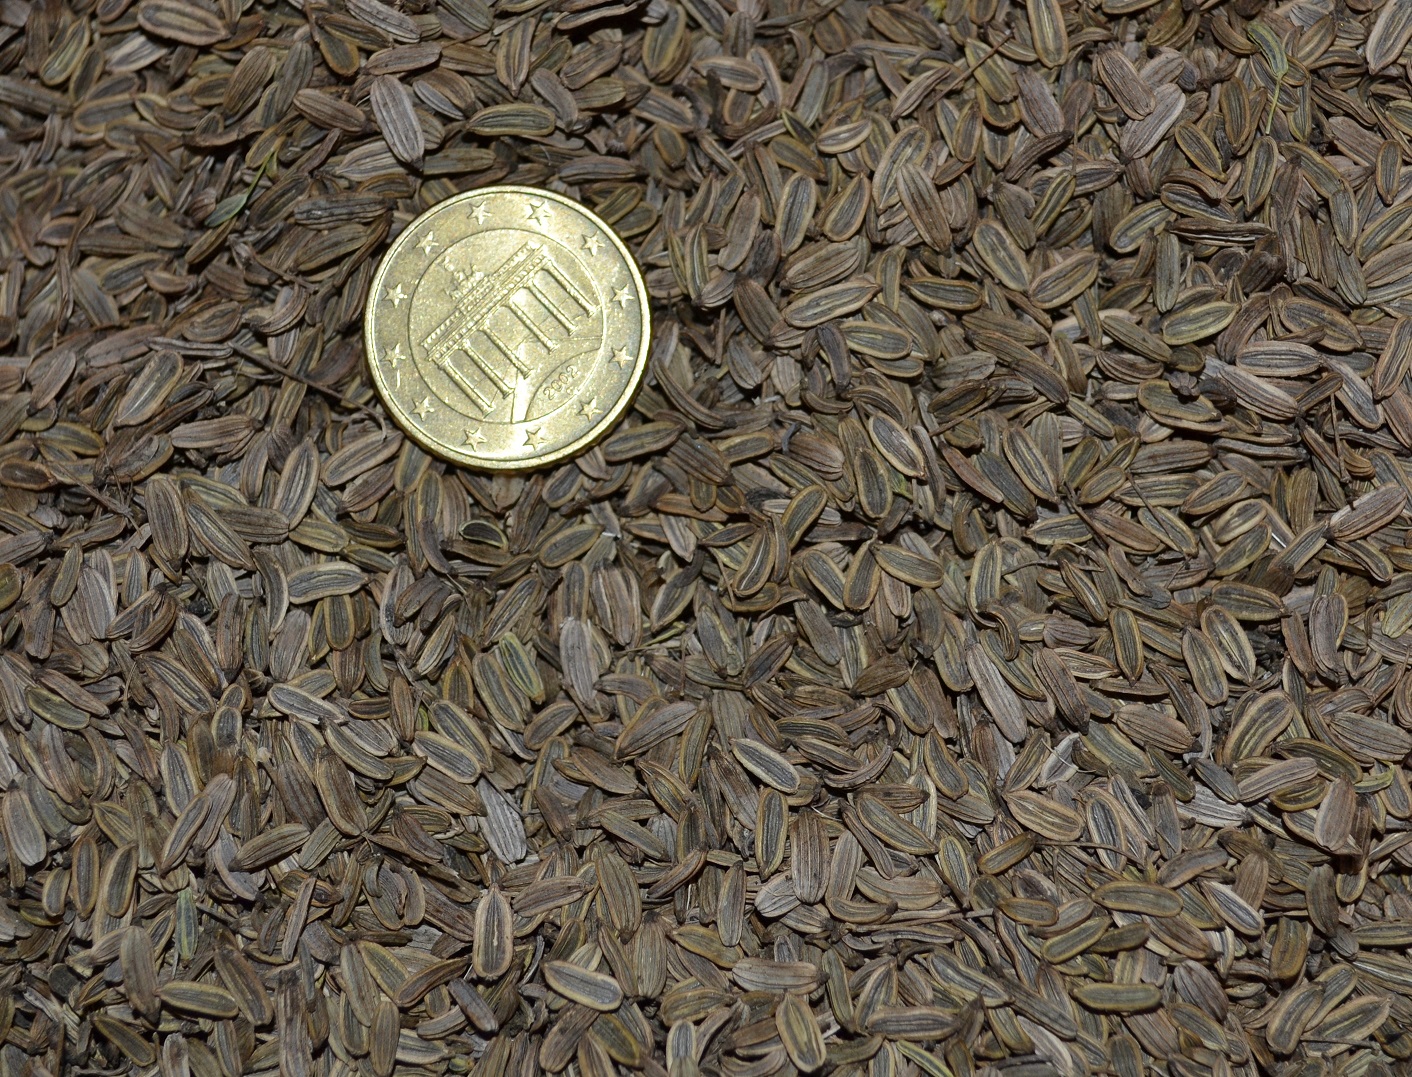 Graines de Fenouil vivace - Semences de Foeniculum vulgare